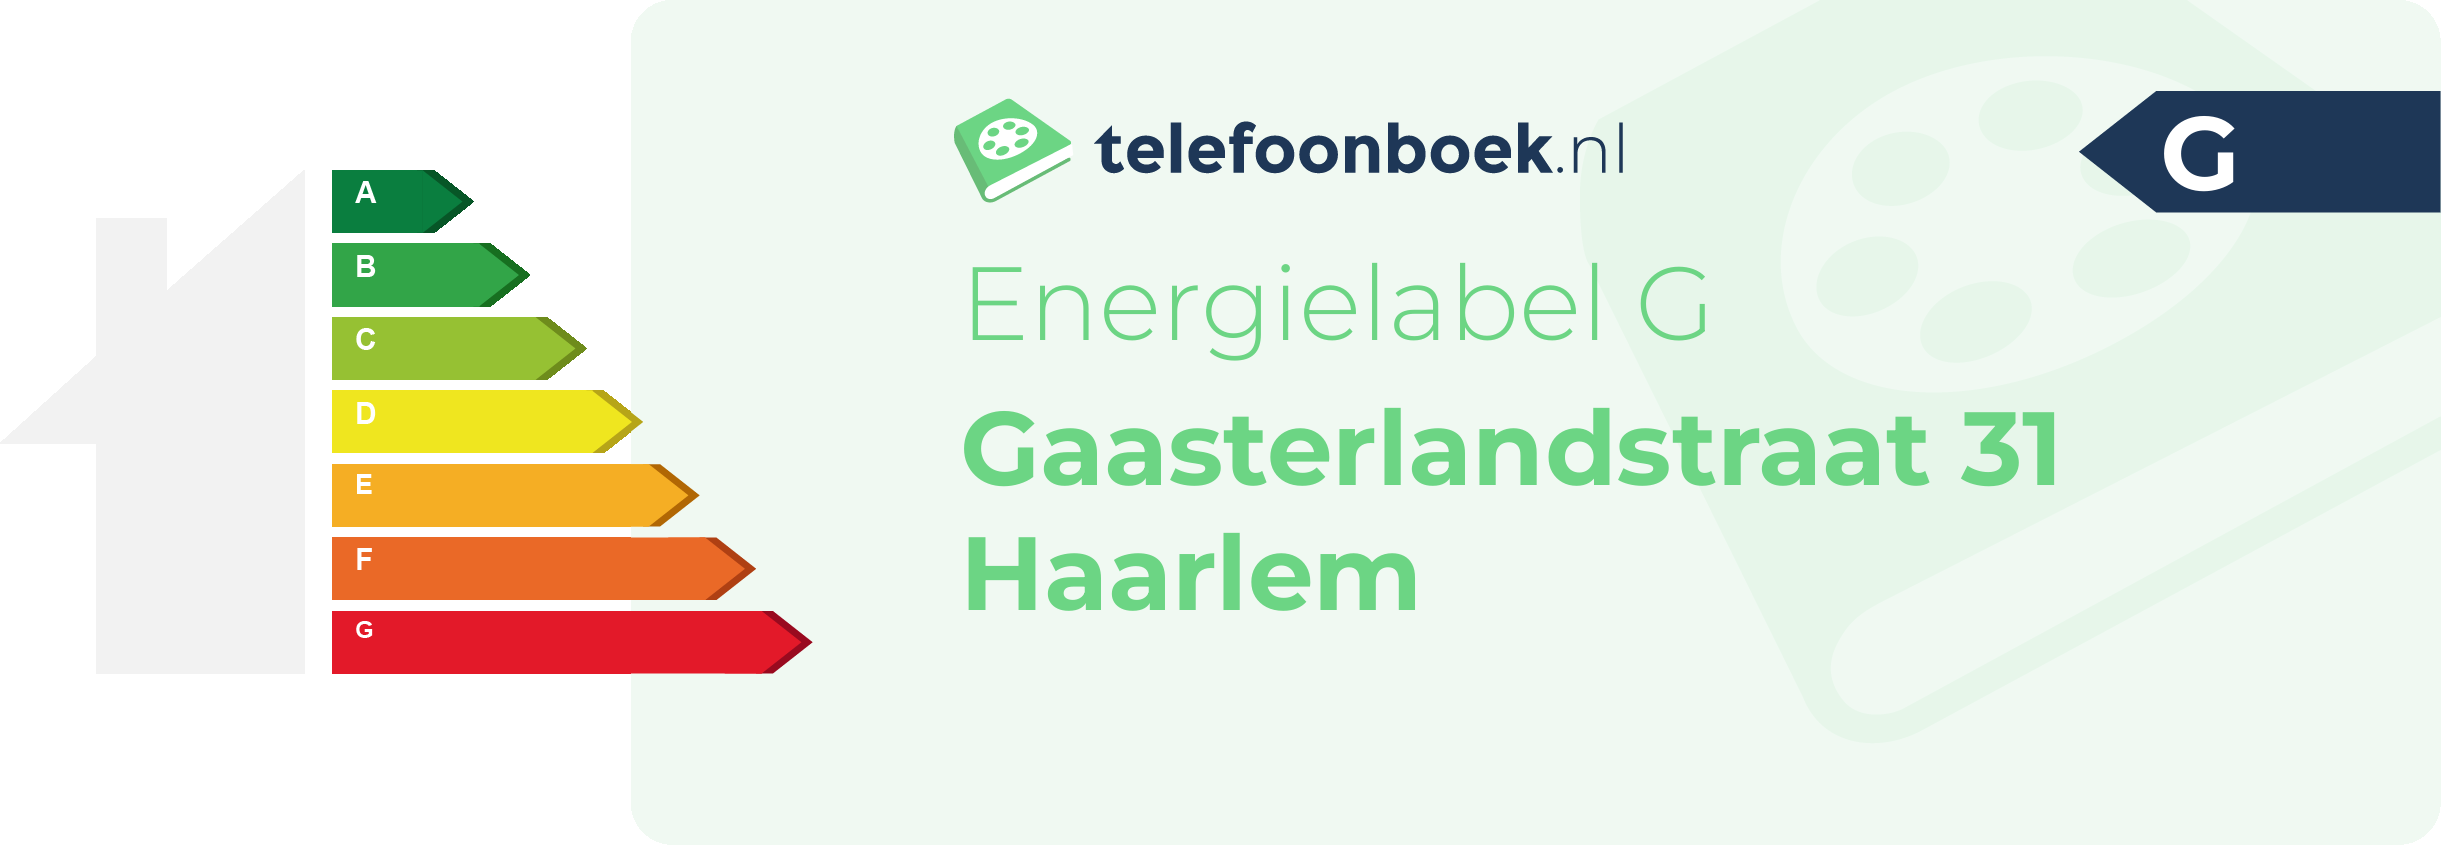 Energielabel Gaasterlandstraat 31 Haarlem